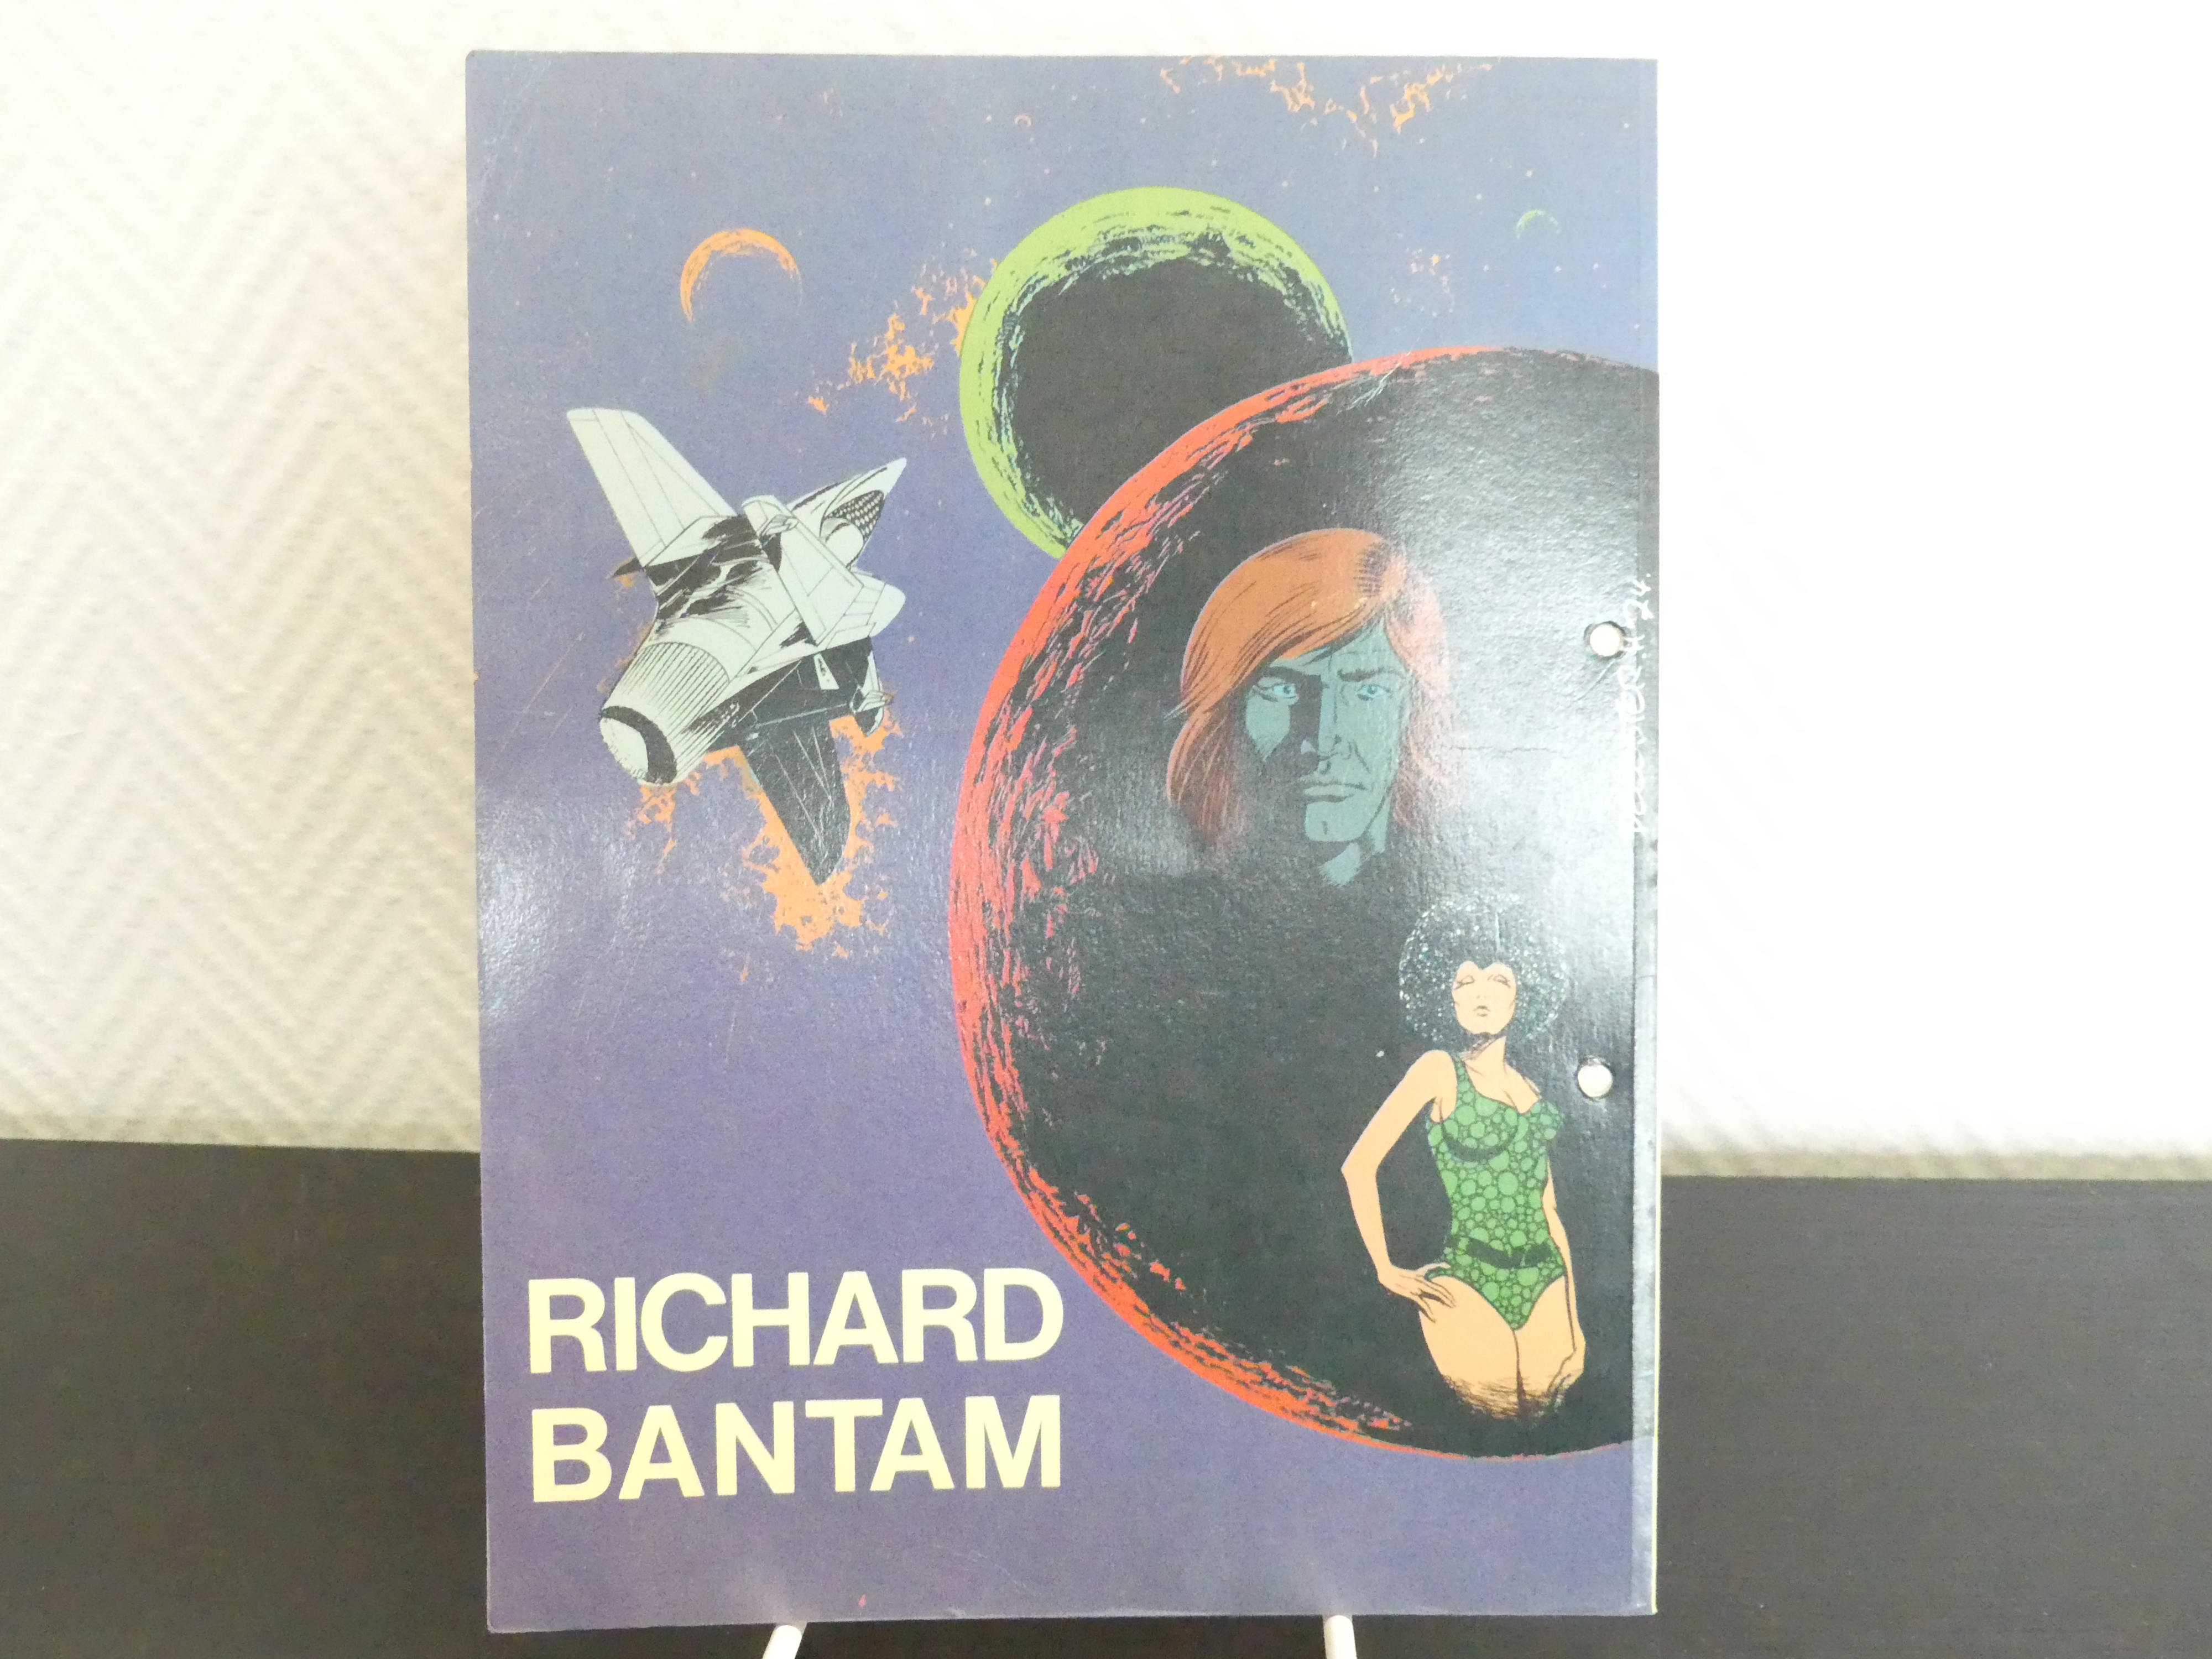 Richard Bantum stripalbum De Zeven gevaren van Sumor, 1975